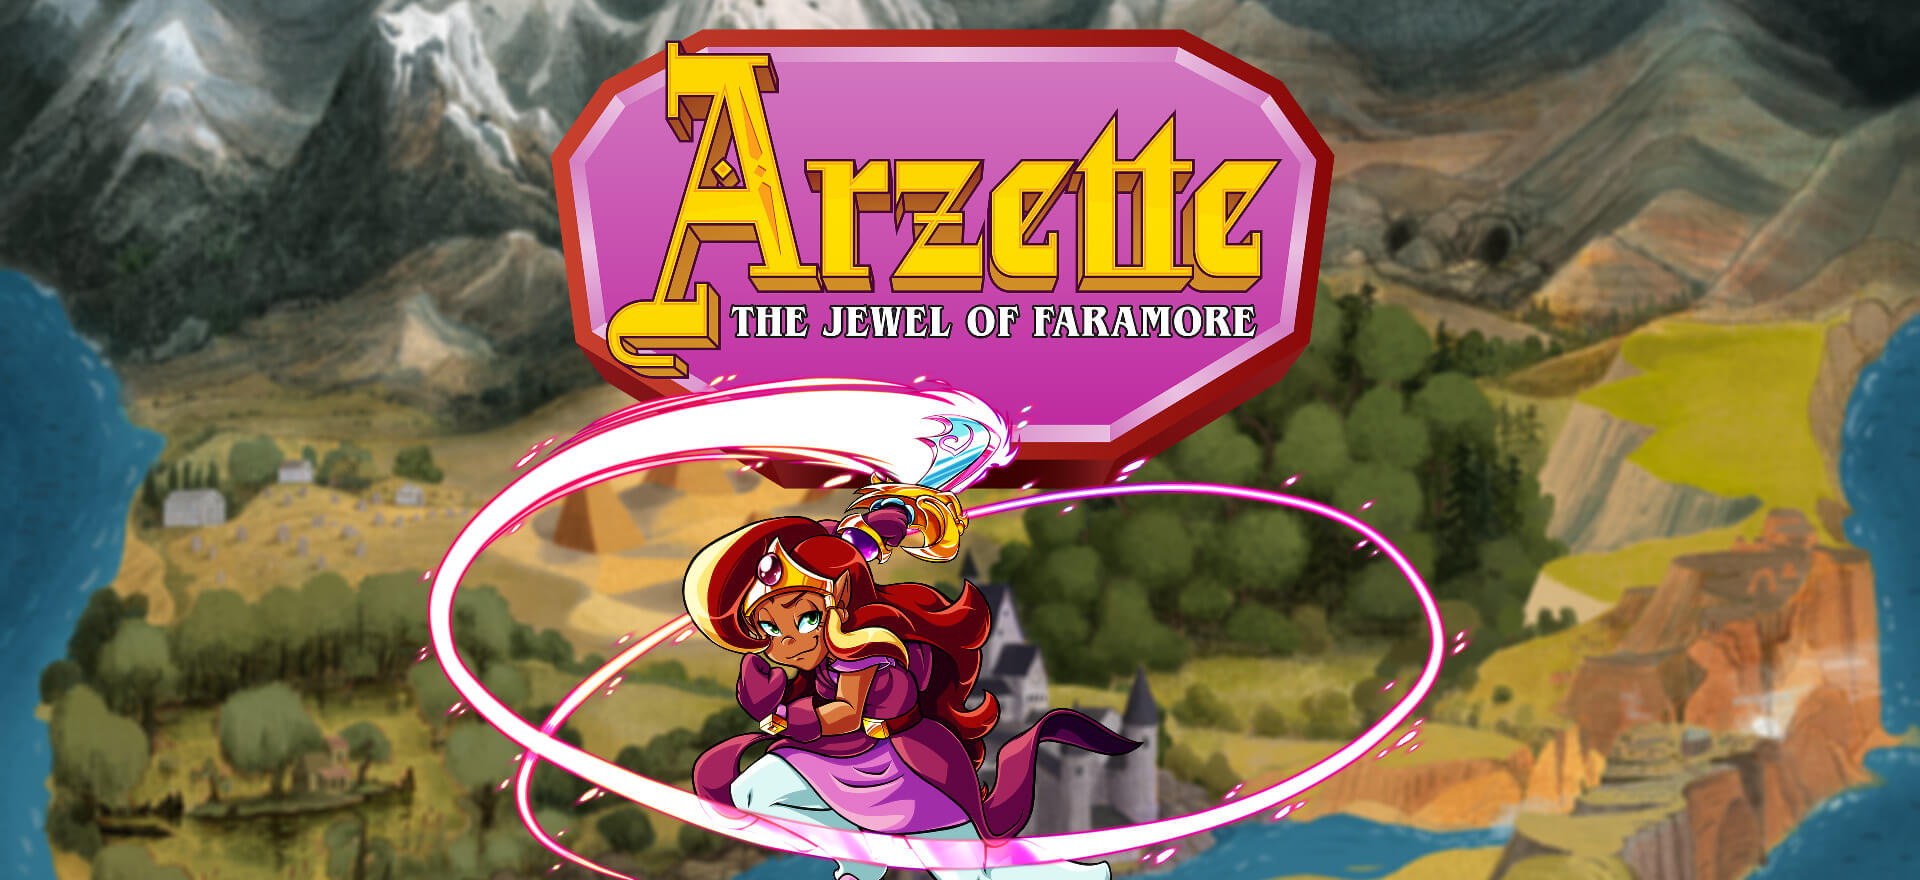 Arzette Banner Image